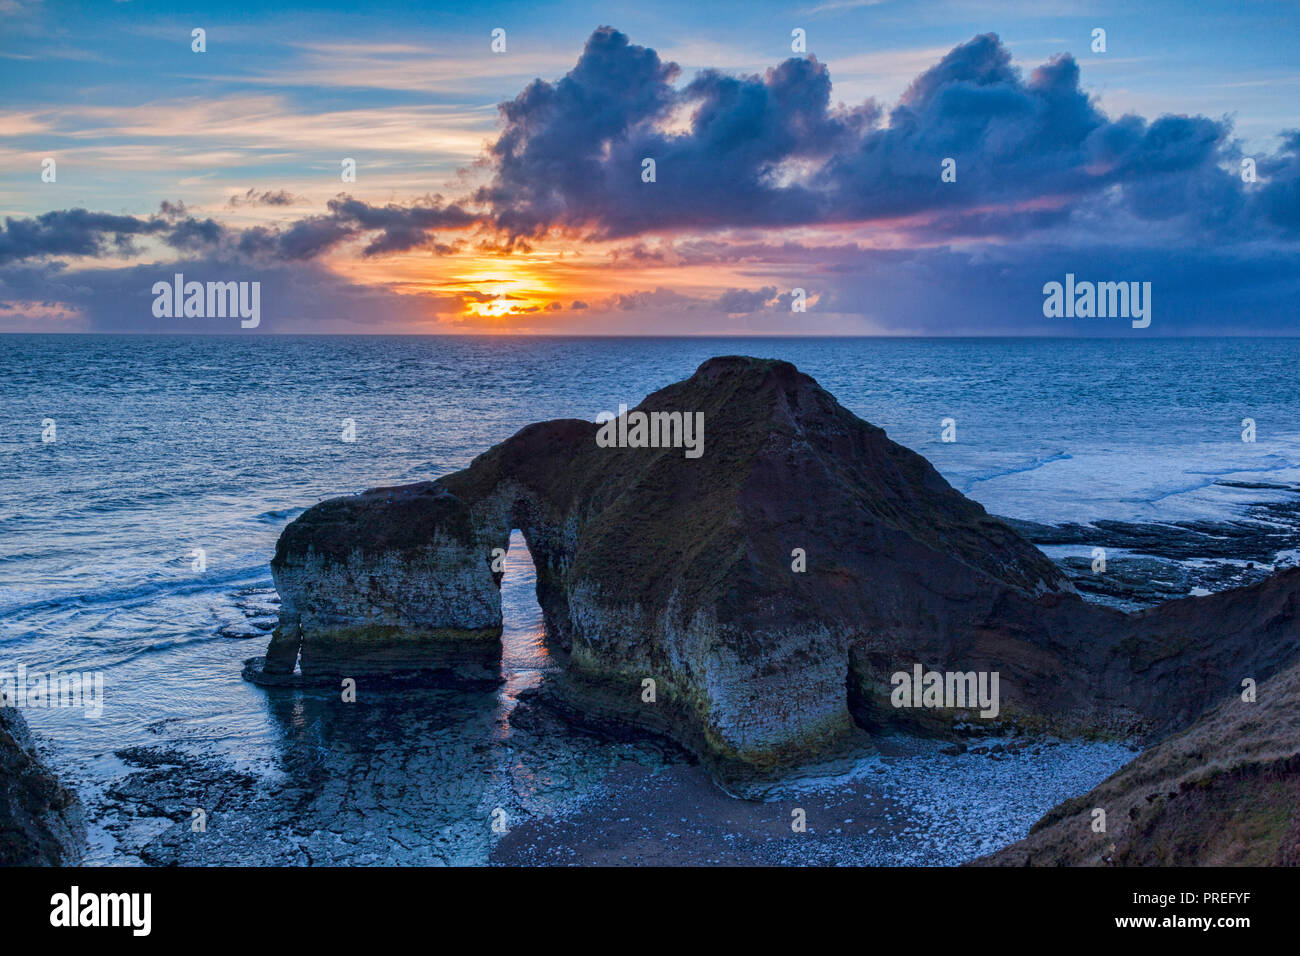 Calcare formazione rocciosa conosciuta come il dinosauro, Flamborough Head, East Yorkshire, Inghilterra, Regno Unito, sunrise. Foto Stock